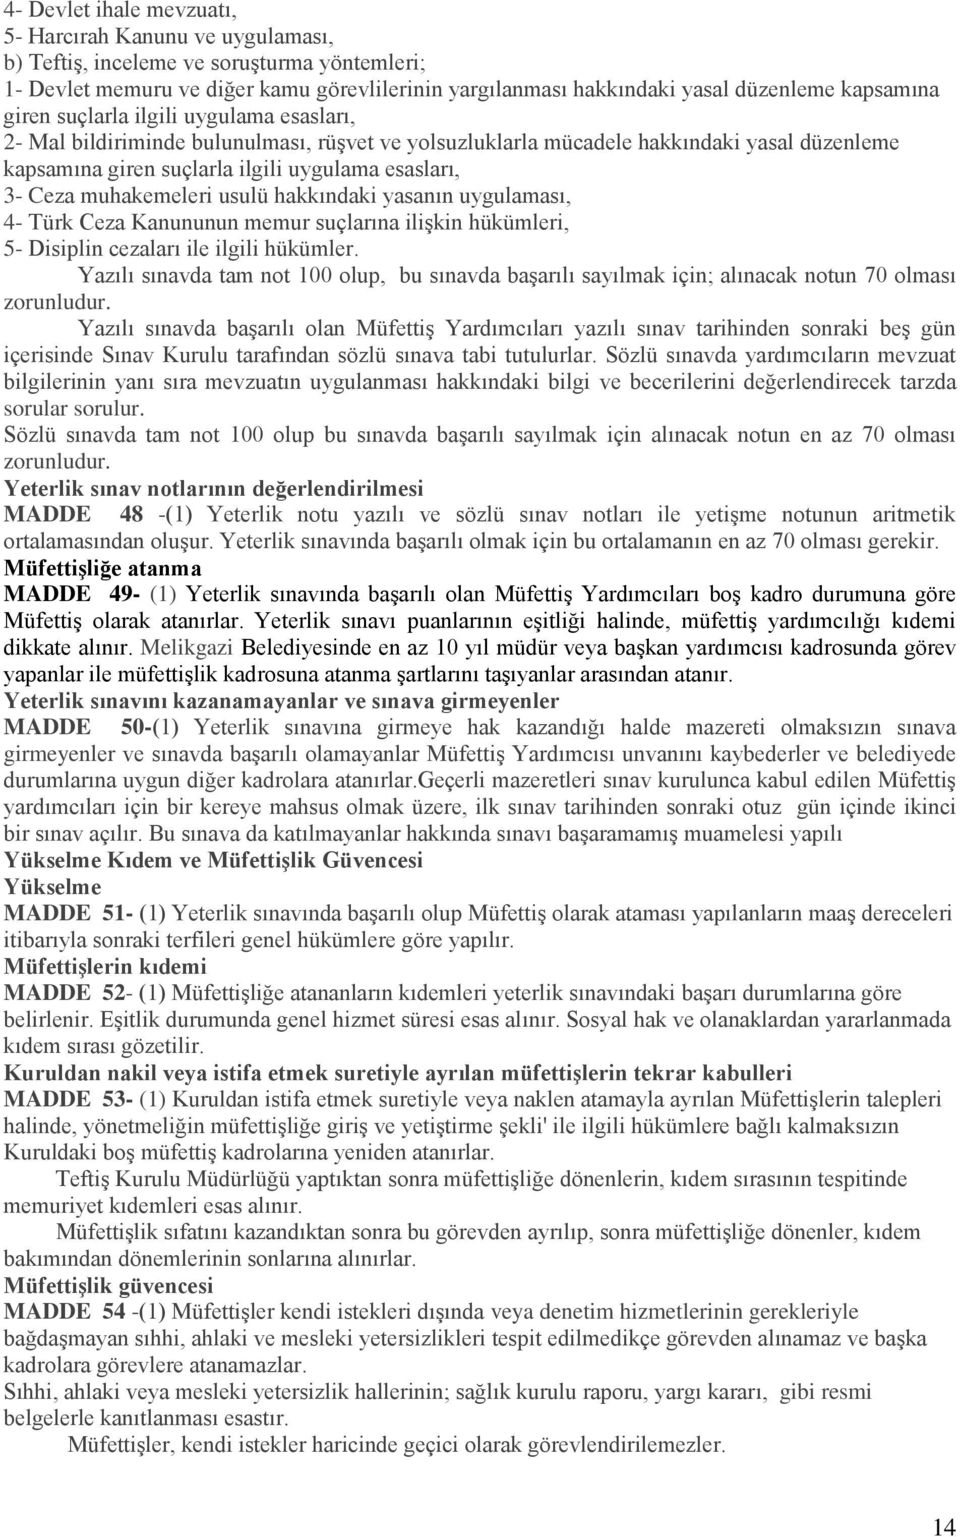 Ceza muhakemeleri usulü hakkındaki yasanın uygulaması, 4- Türk Ceza Kanununun memur suçlarına ilişkin hükümleri, 5- Disiplin cezaları ile ilgili hükümler.